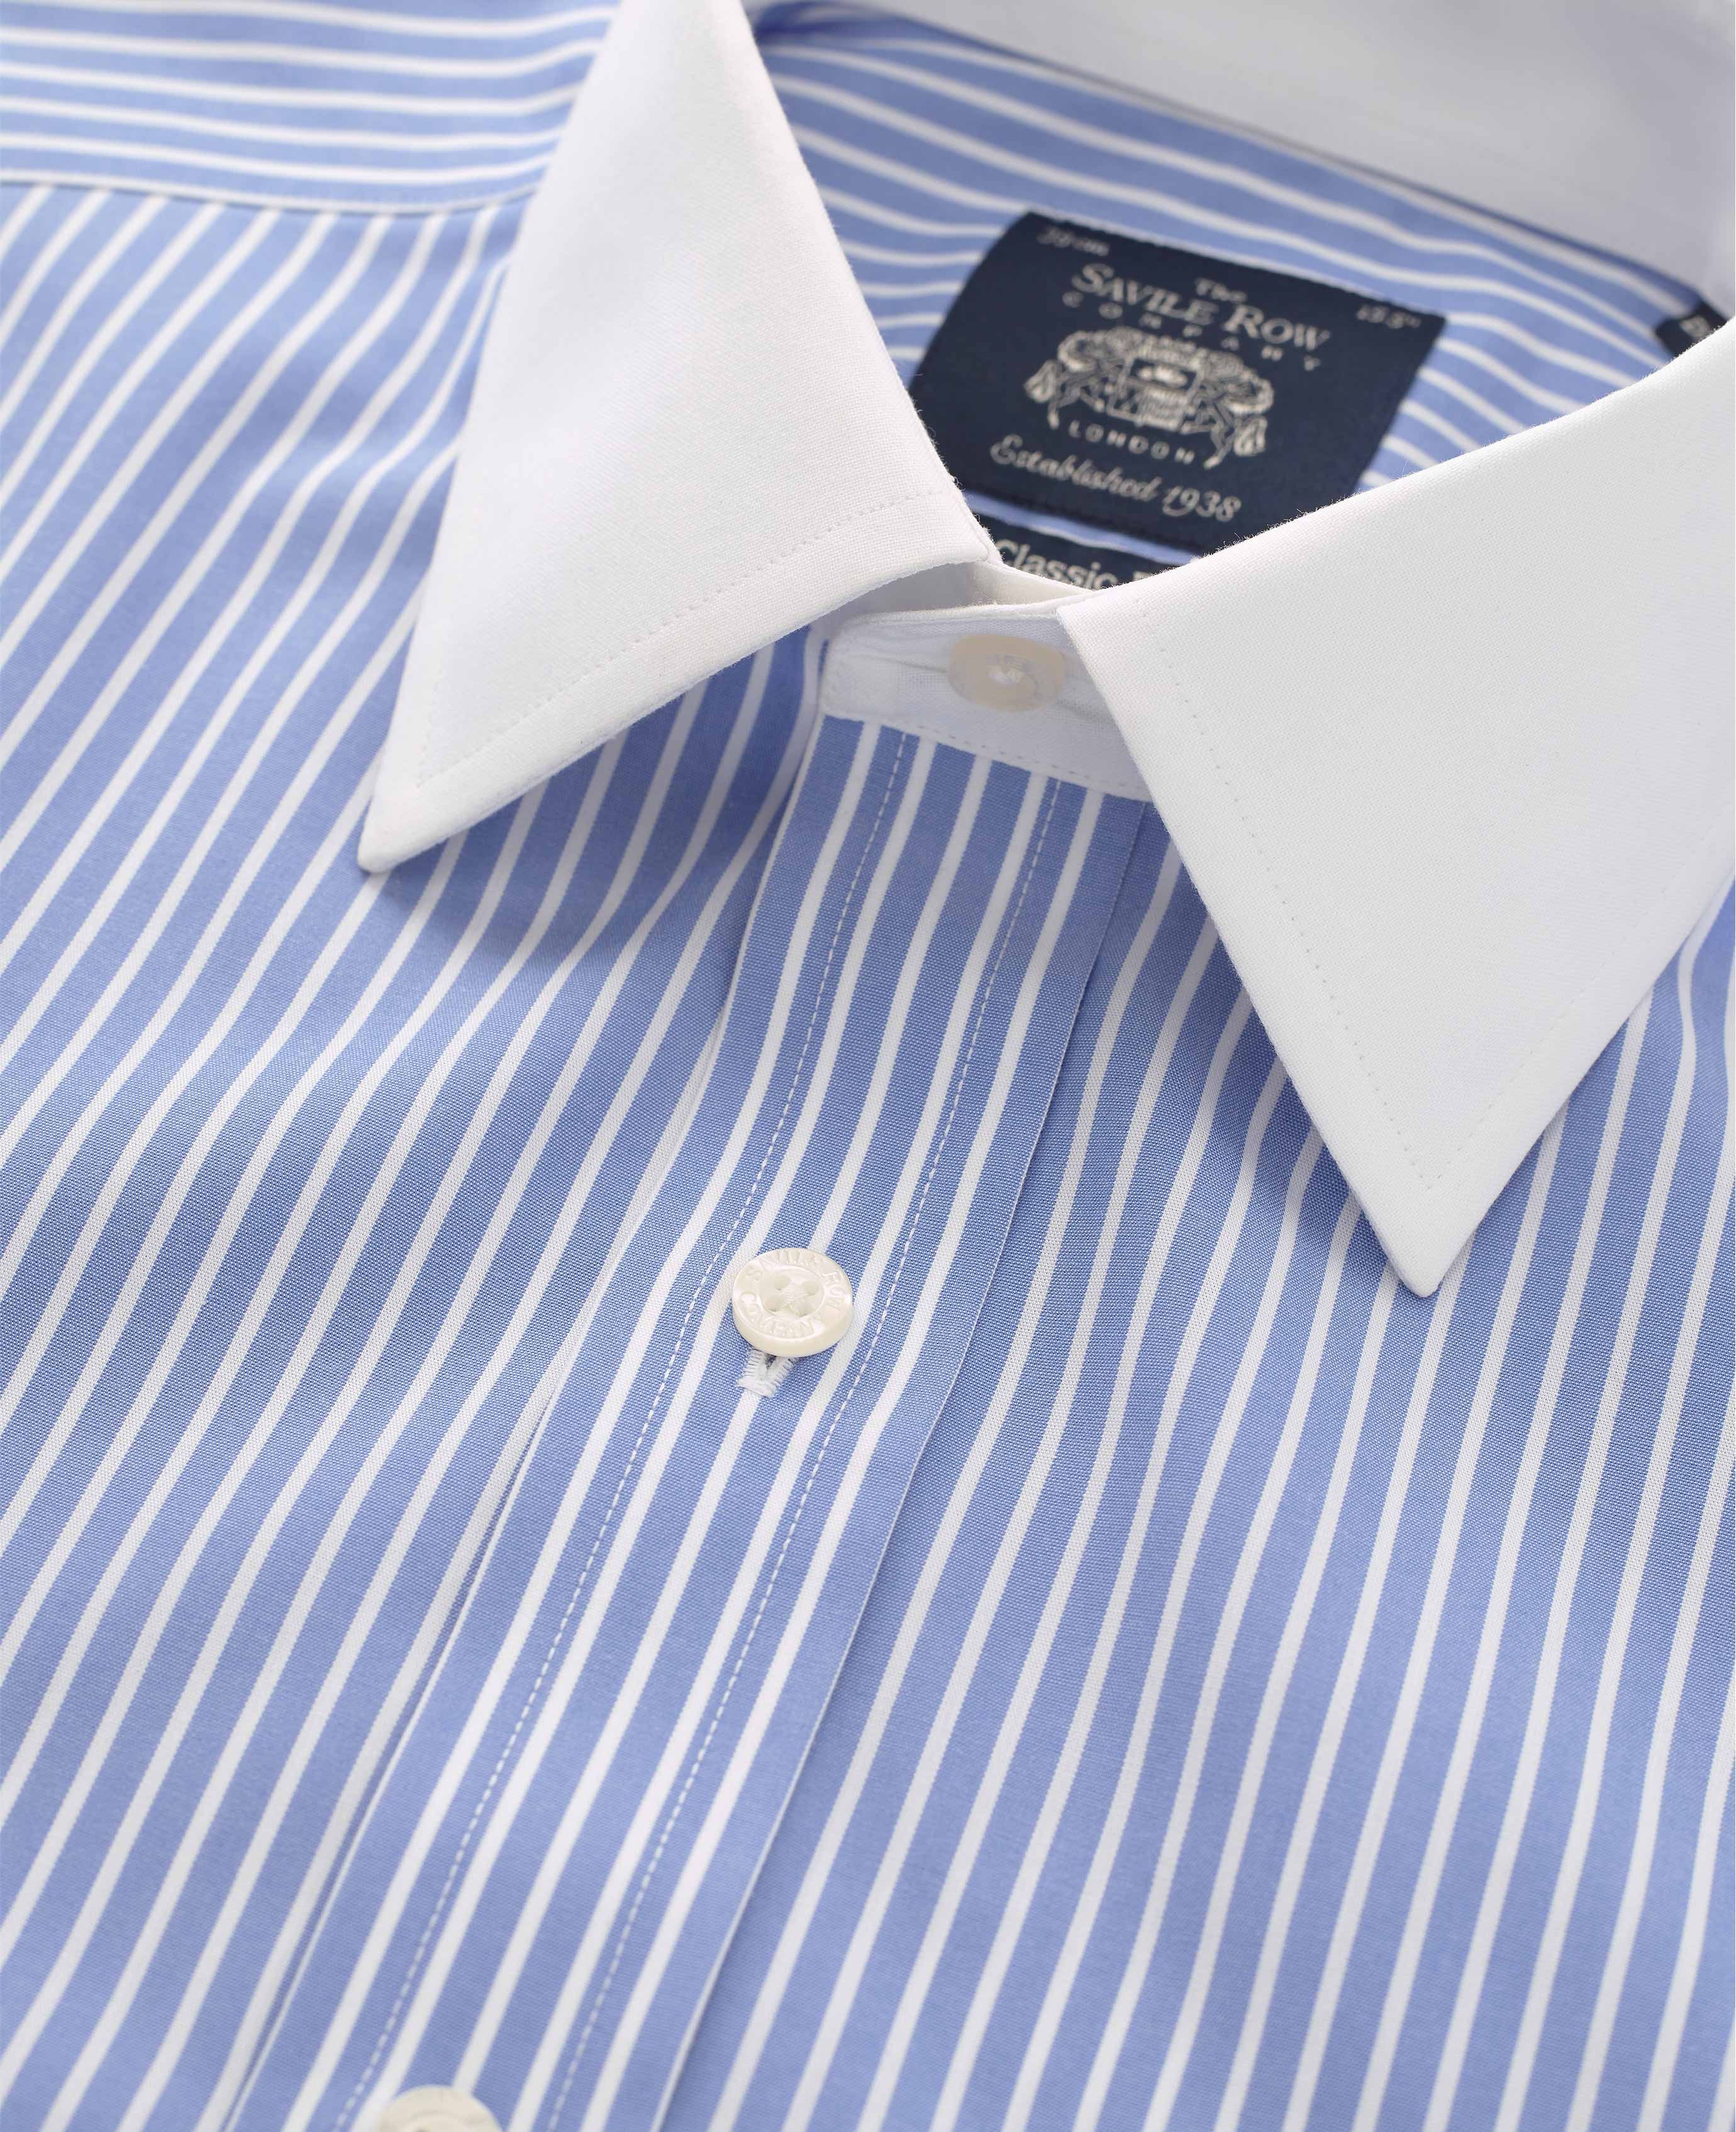 Men's blue and white stripe non-iron shirt